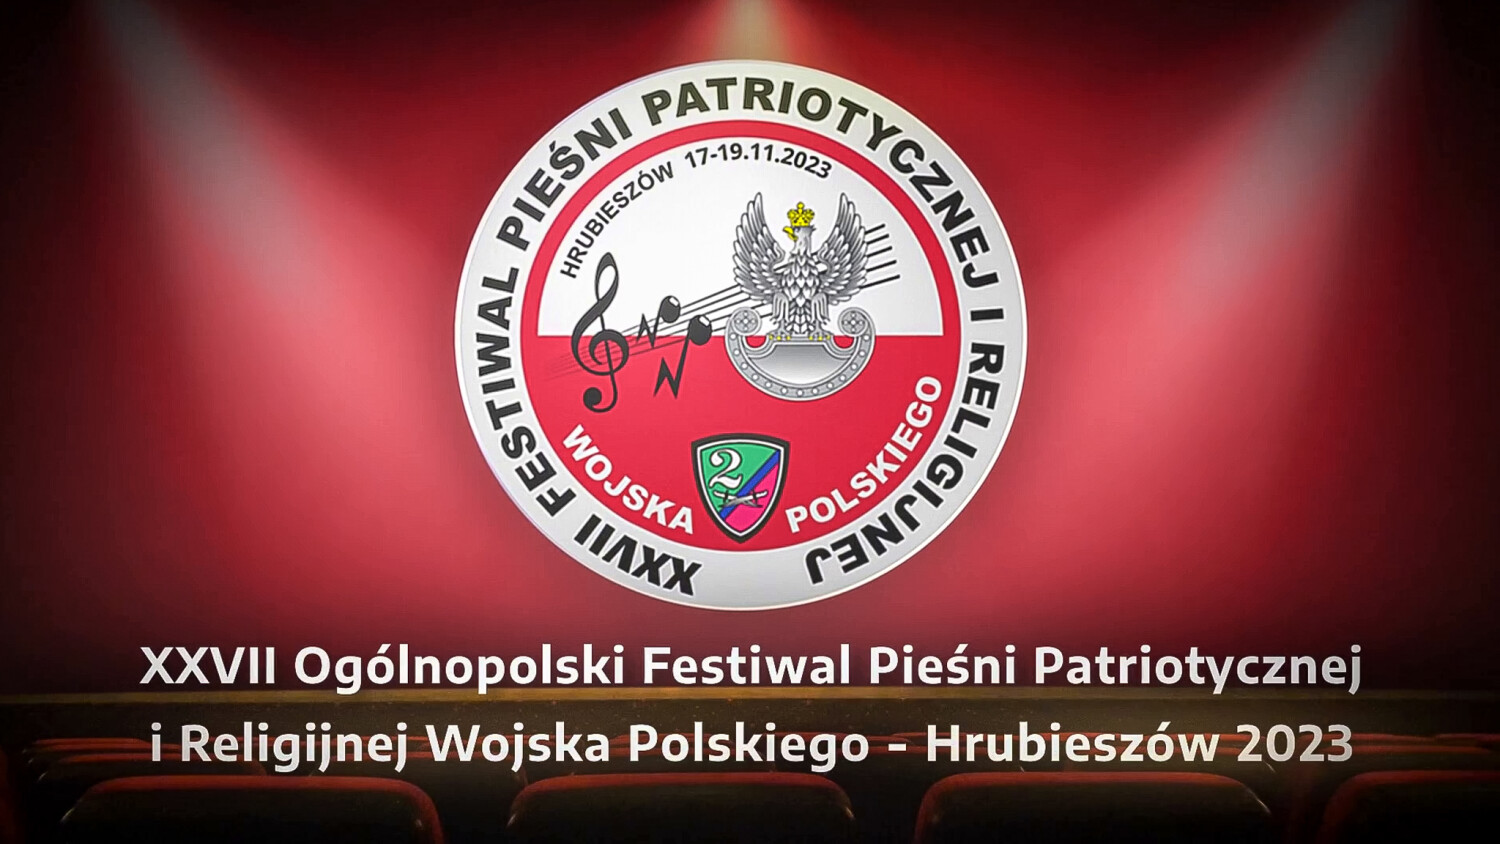 Zapowiedź XXVII Ogólnopolskiego Festiwalu Pieśni Patriotycznej i Religijnej Wojska Polskiego - Hrubieszów 2023